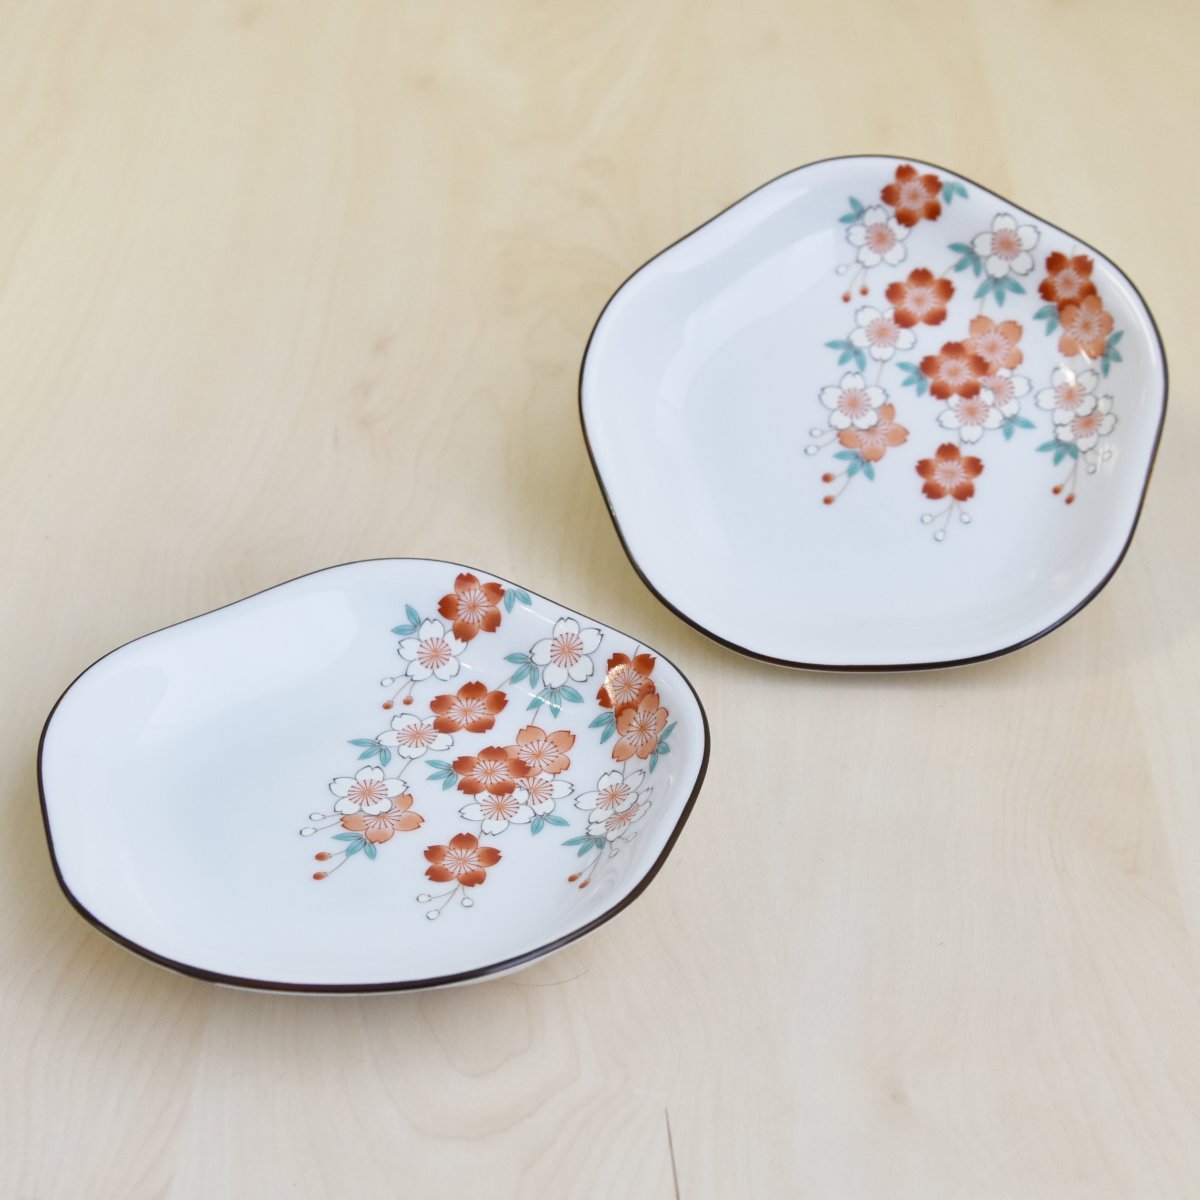 とりわけ皿や和菓子のお皿などに幅広くお使いいただける銘々皿です。桜のデザインが華やかな食卓にしてくれます。径が13.5cm 高さ2.5cm 2枚重ねた時の高さが3.5cm位になります。電子レンジはお使いいただけます。